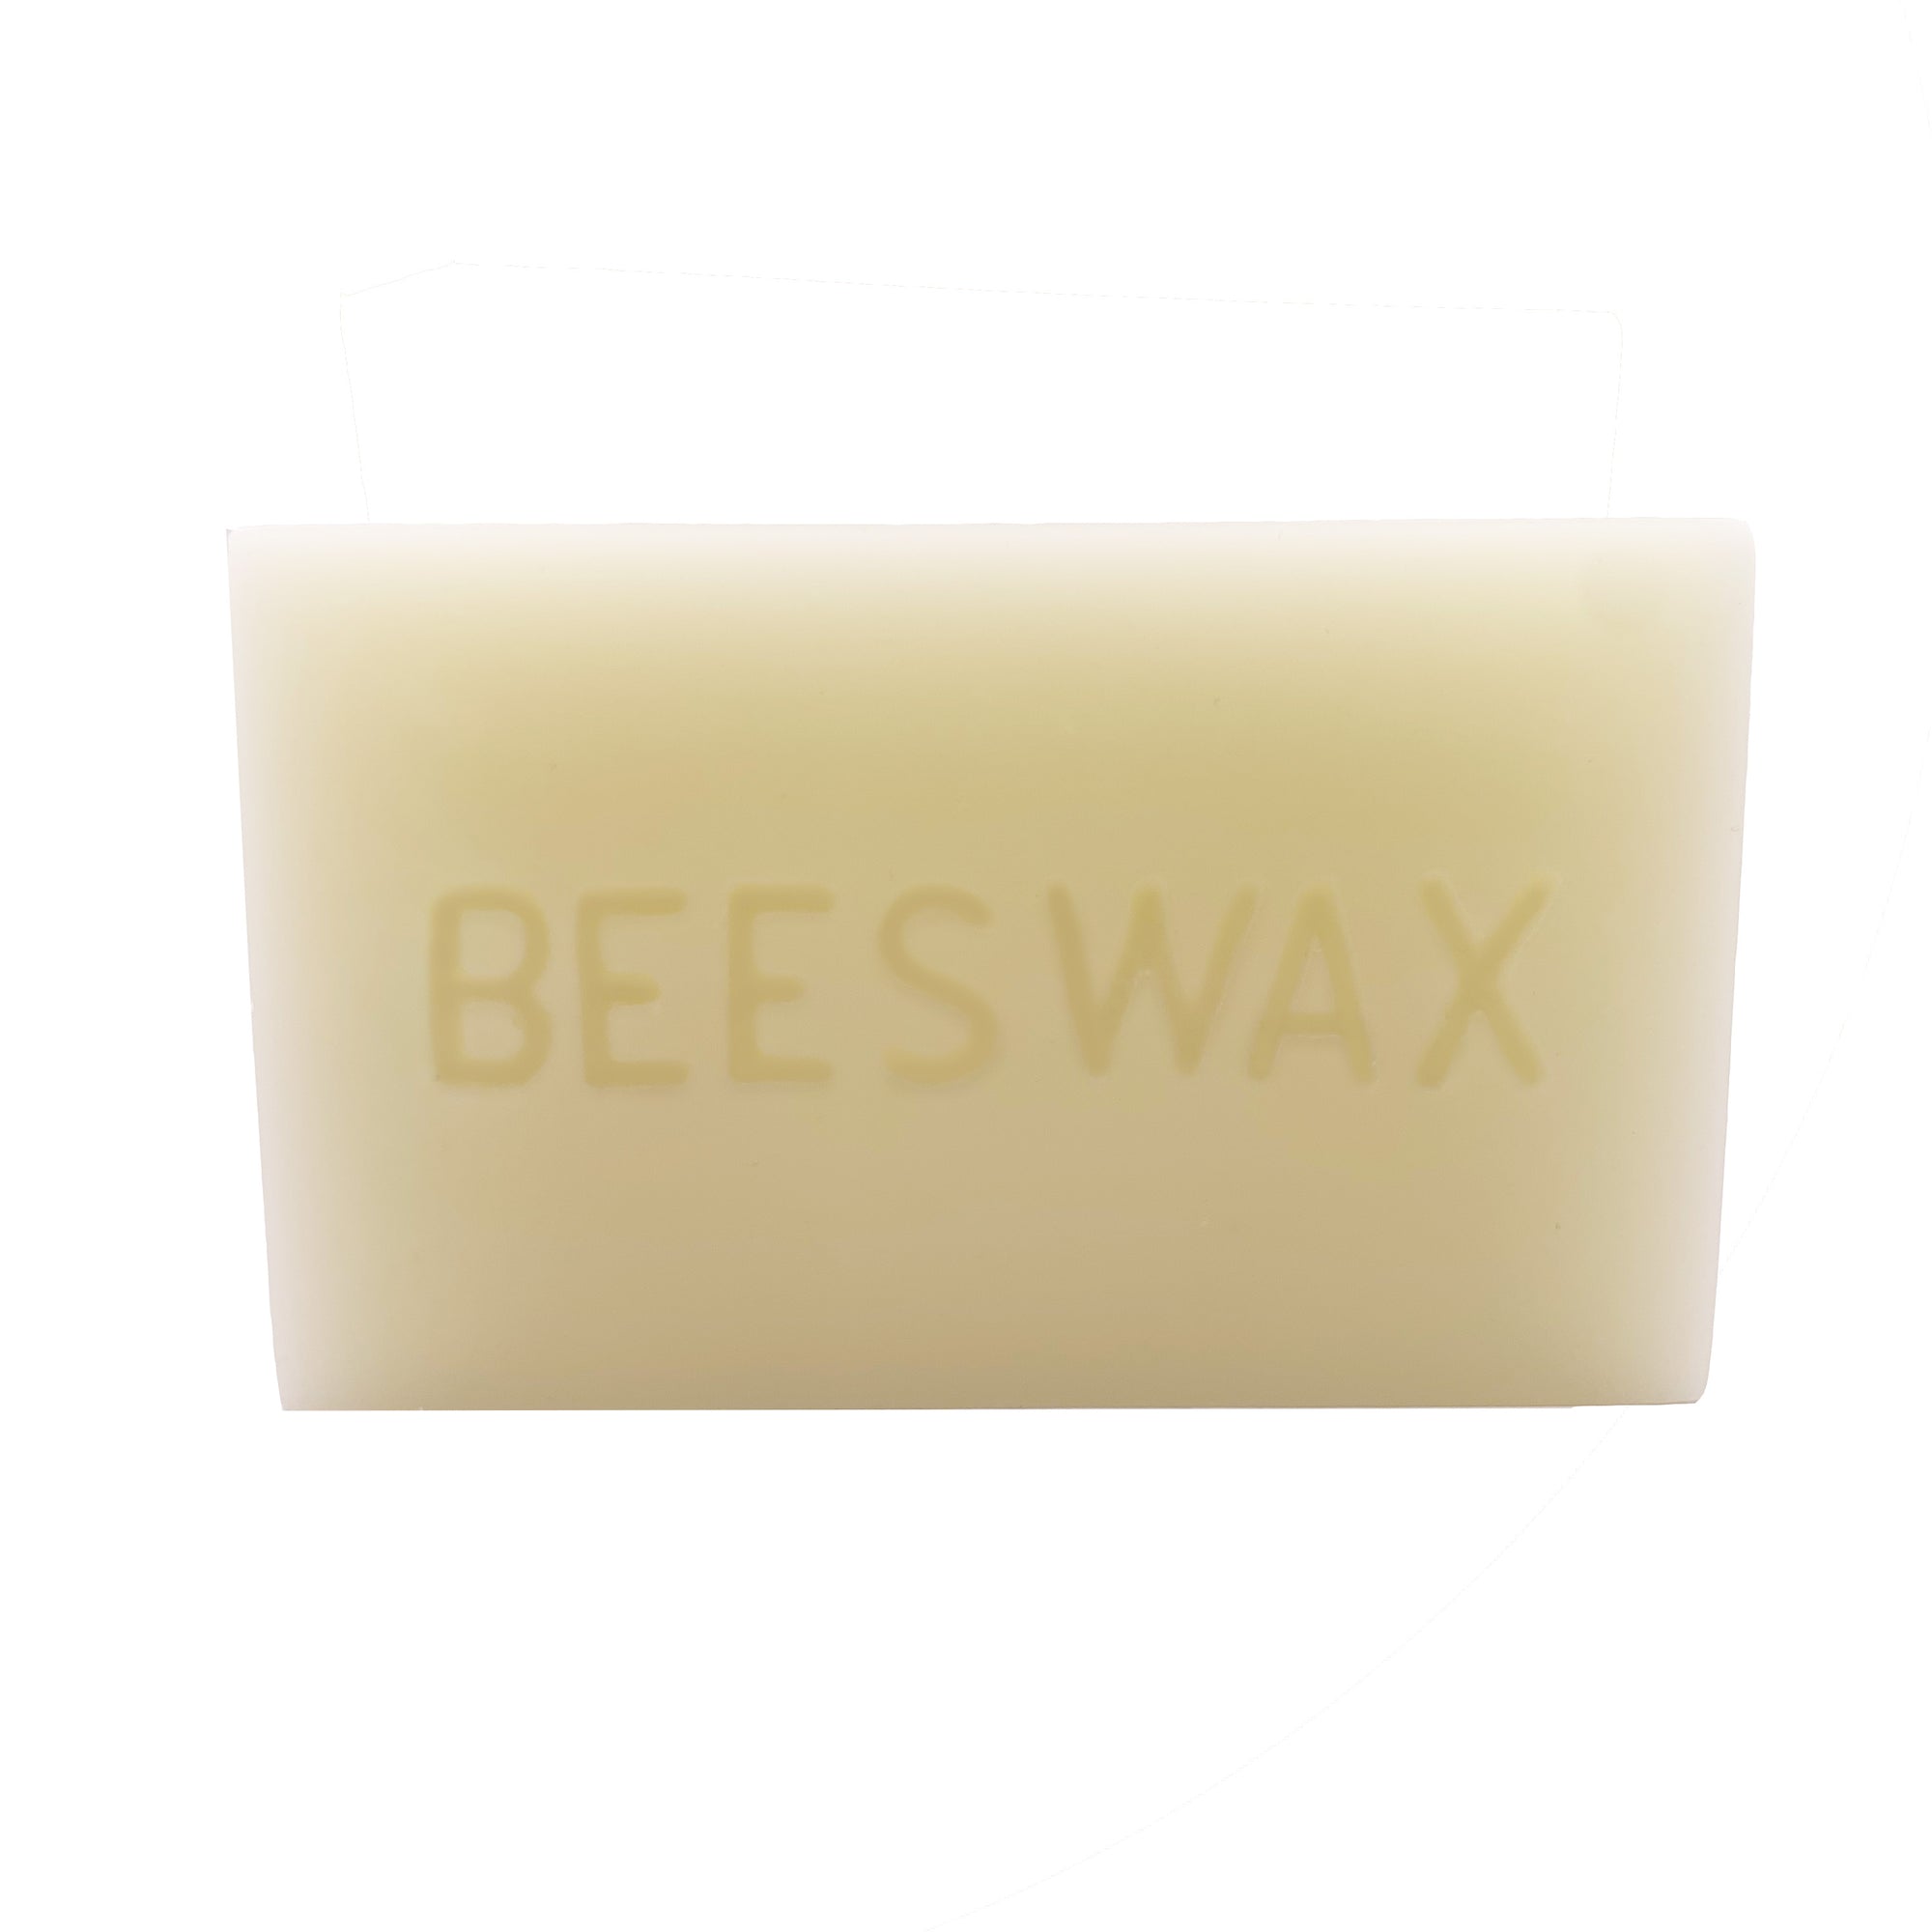 Pure, White Ivory Beeswax Blocks